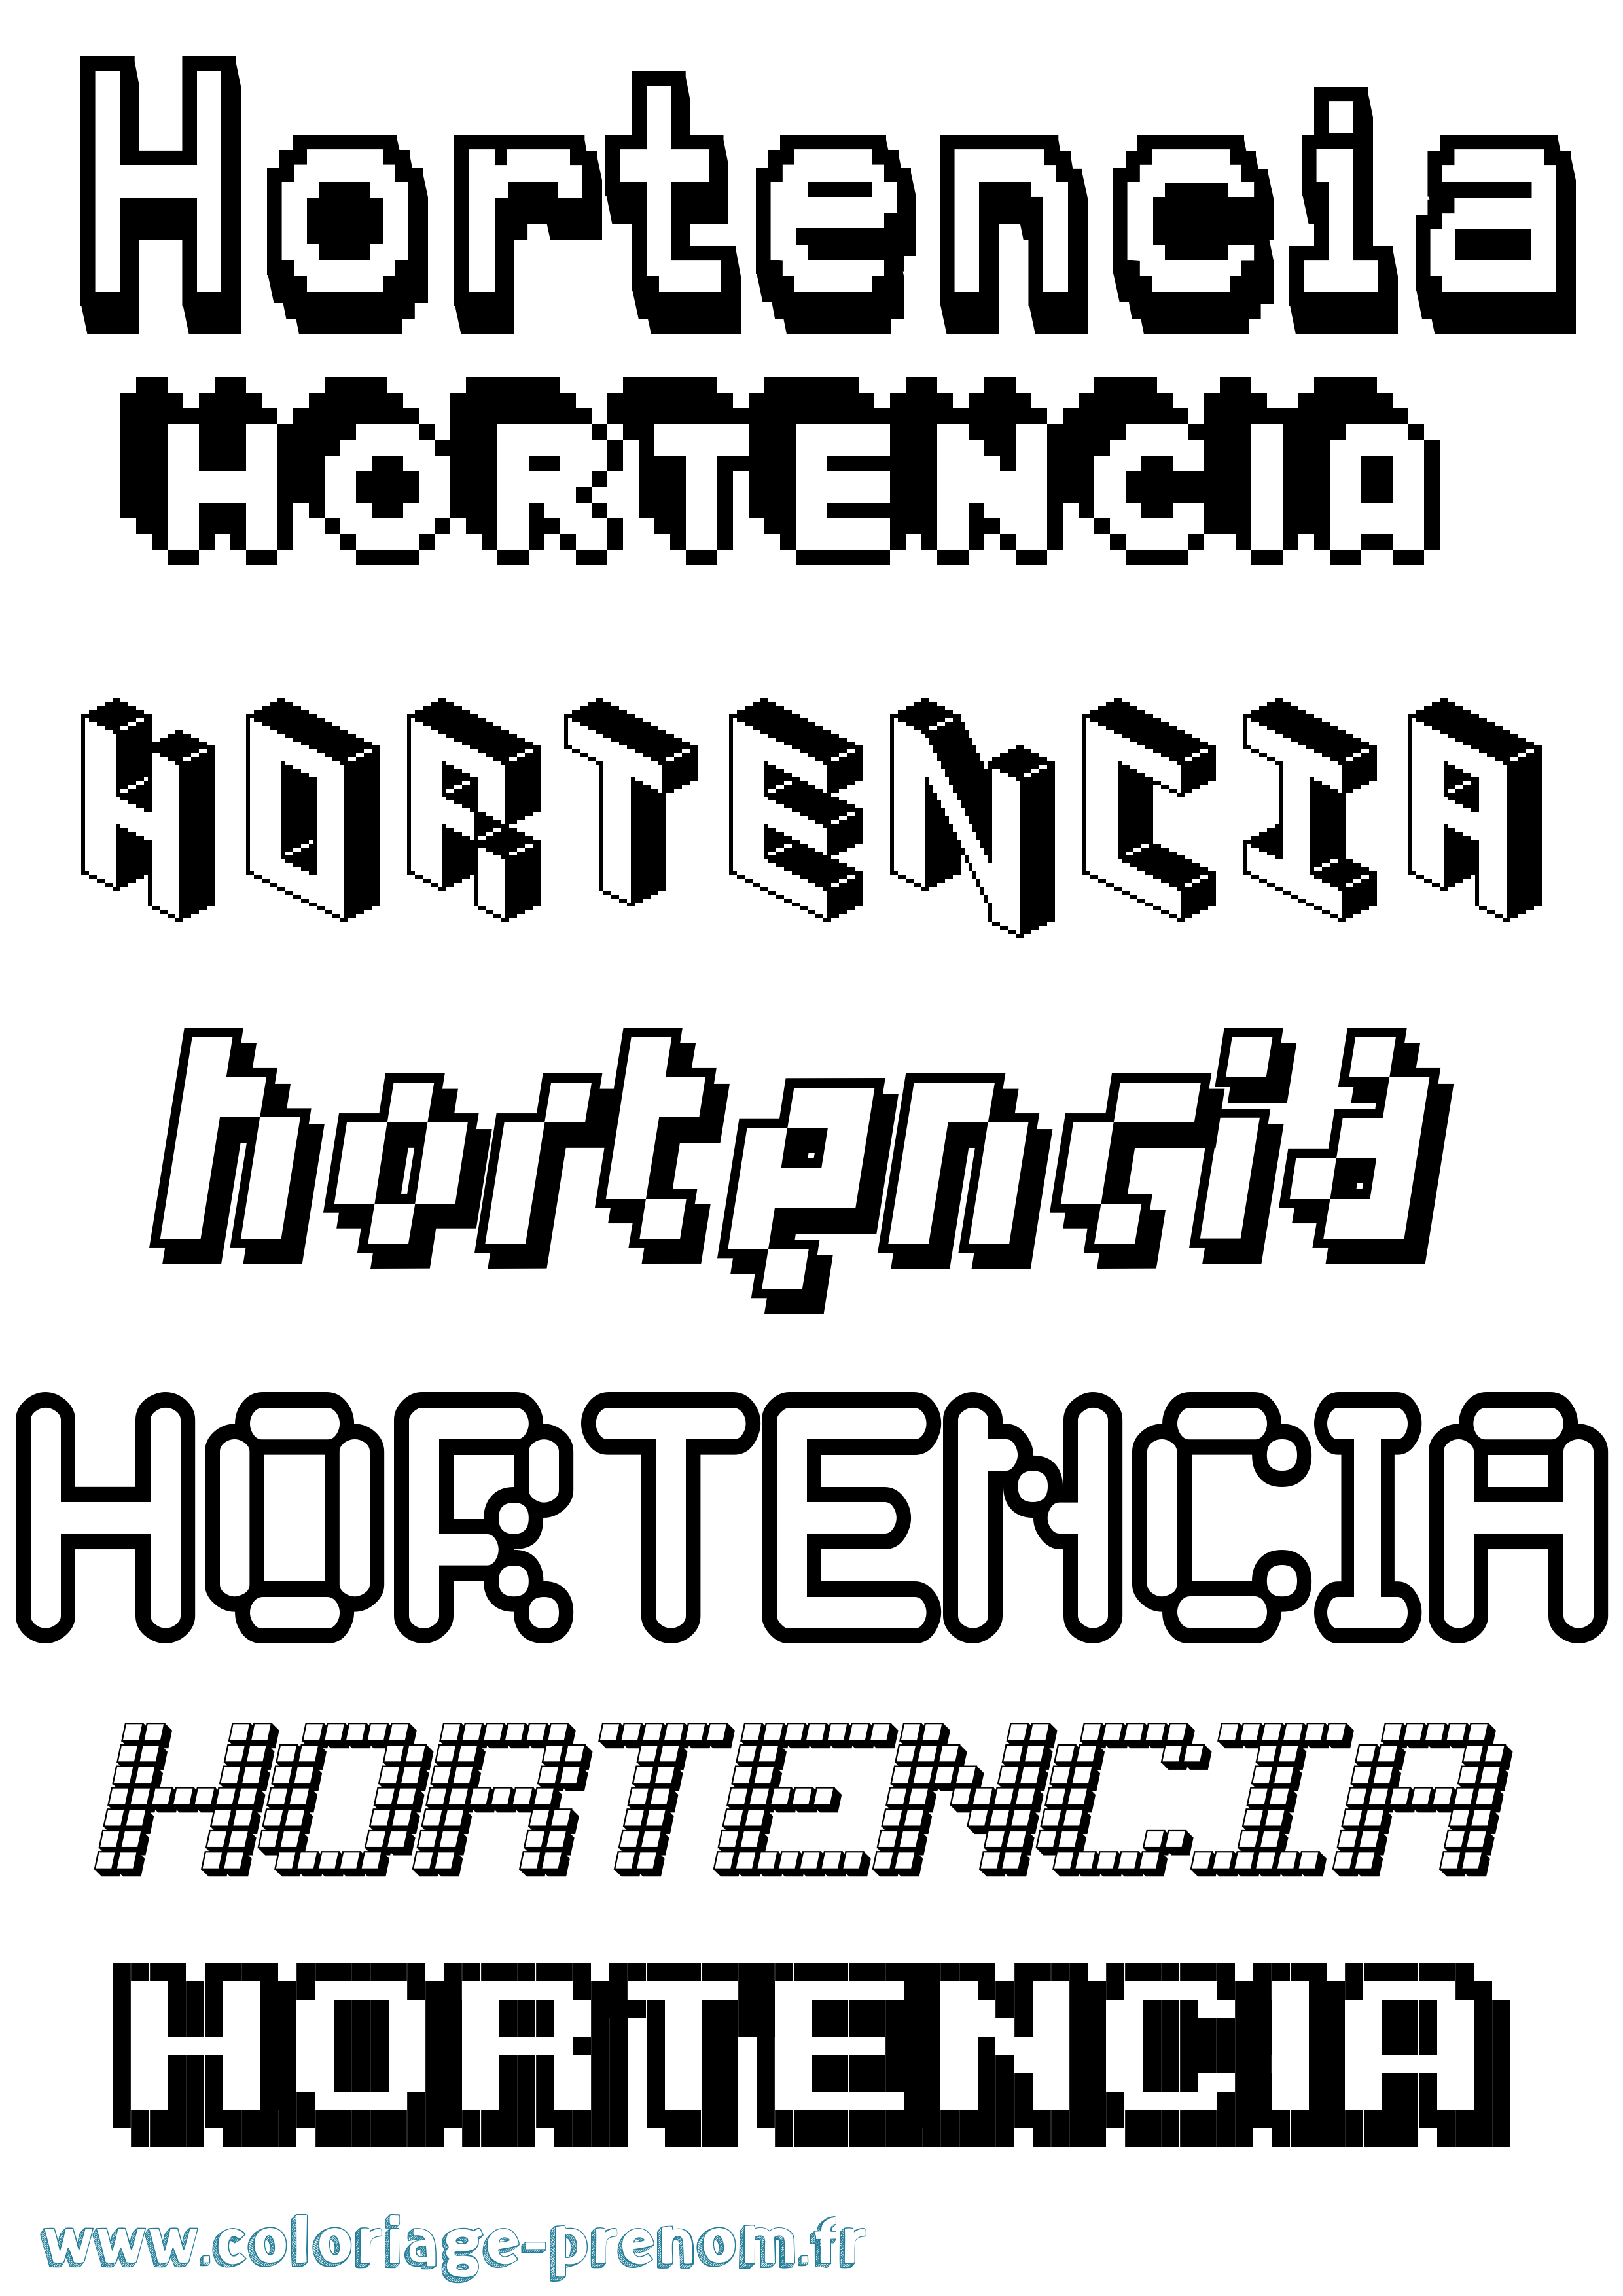 Coloriage prénom Hortencia Pixel